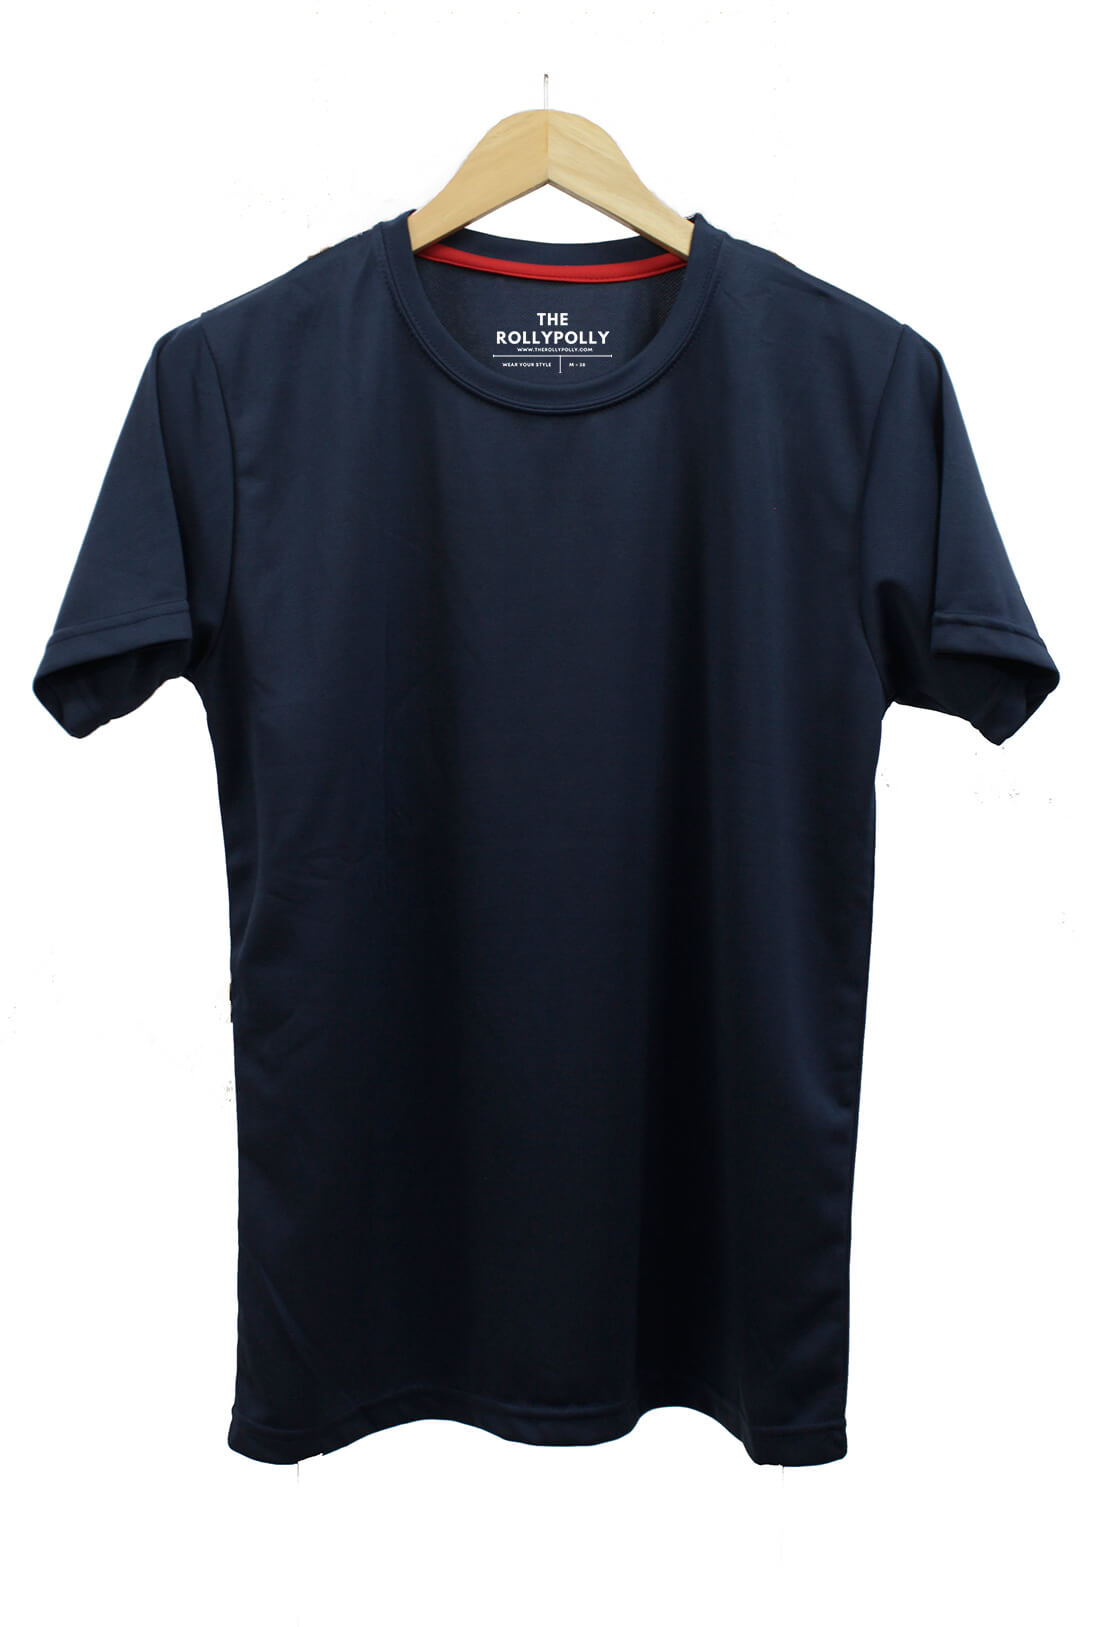 Dri Fit Round Neck Navy Blue Men's T-Shirt